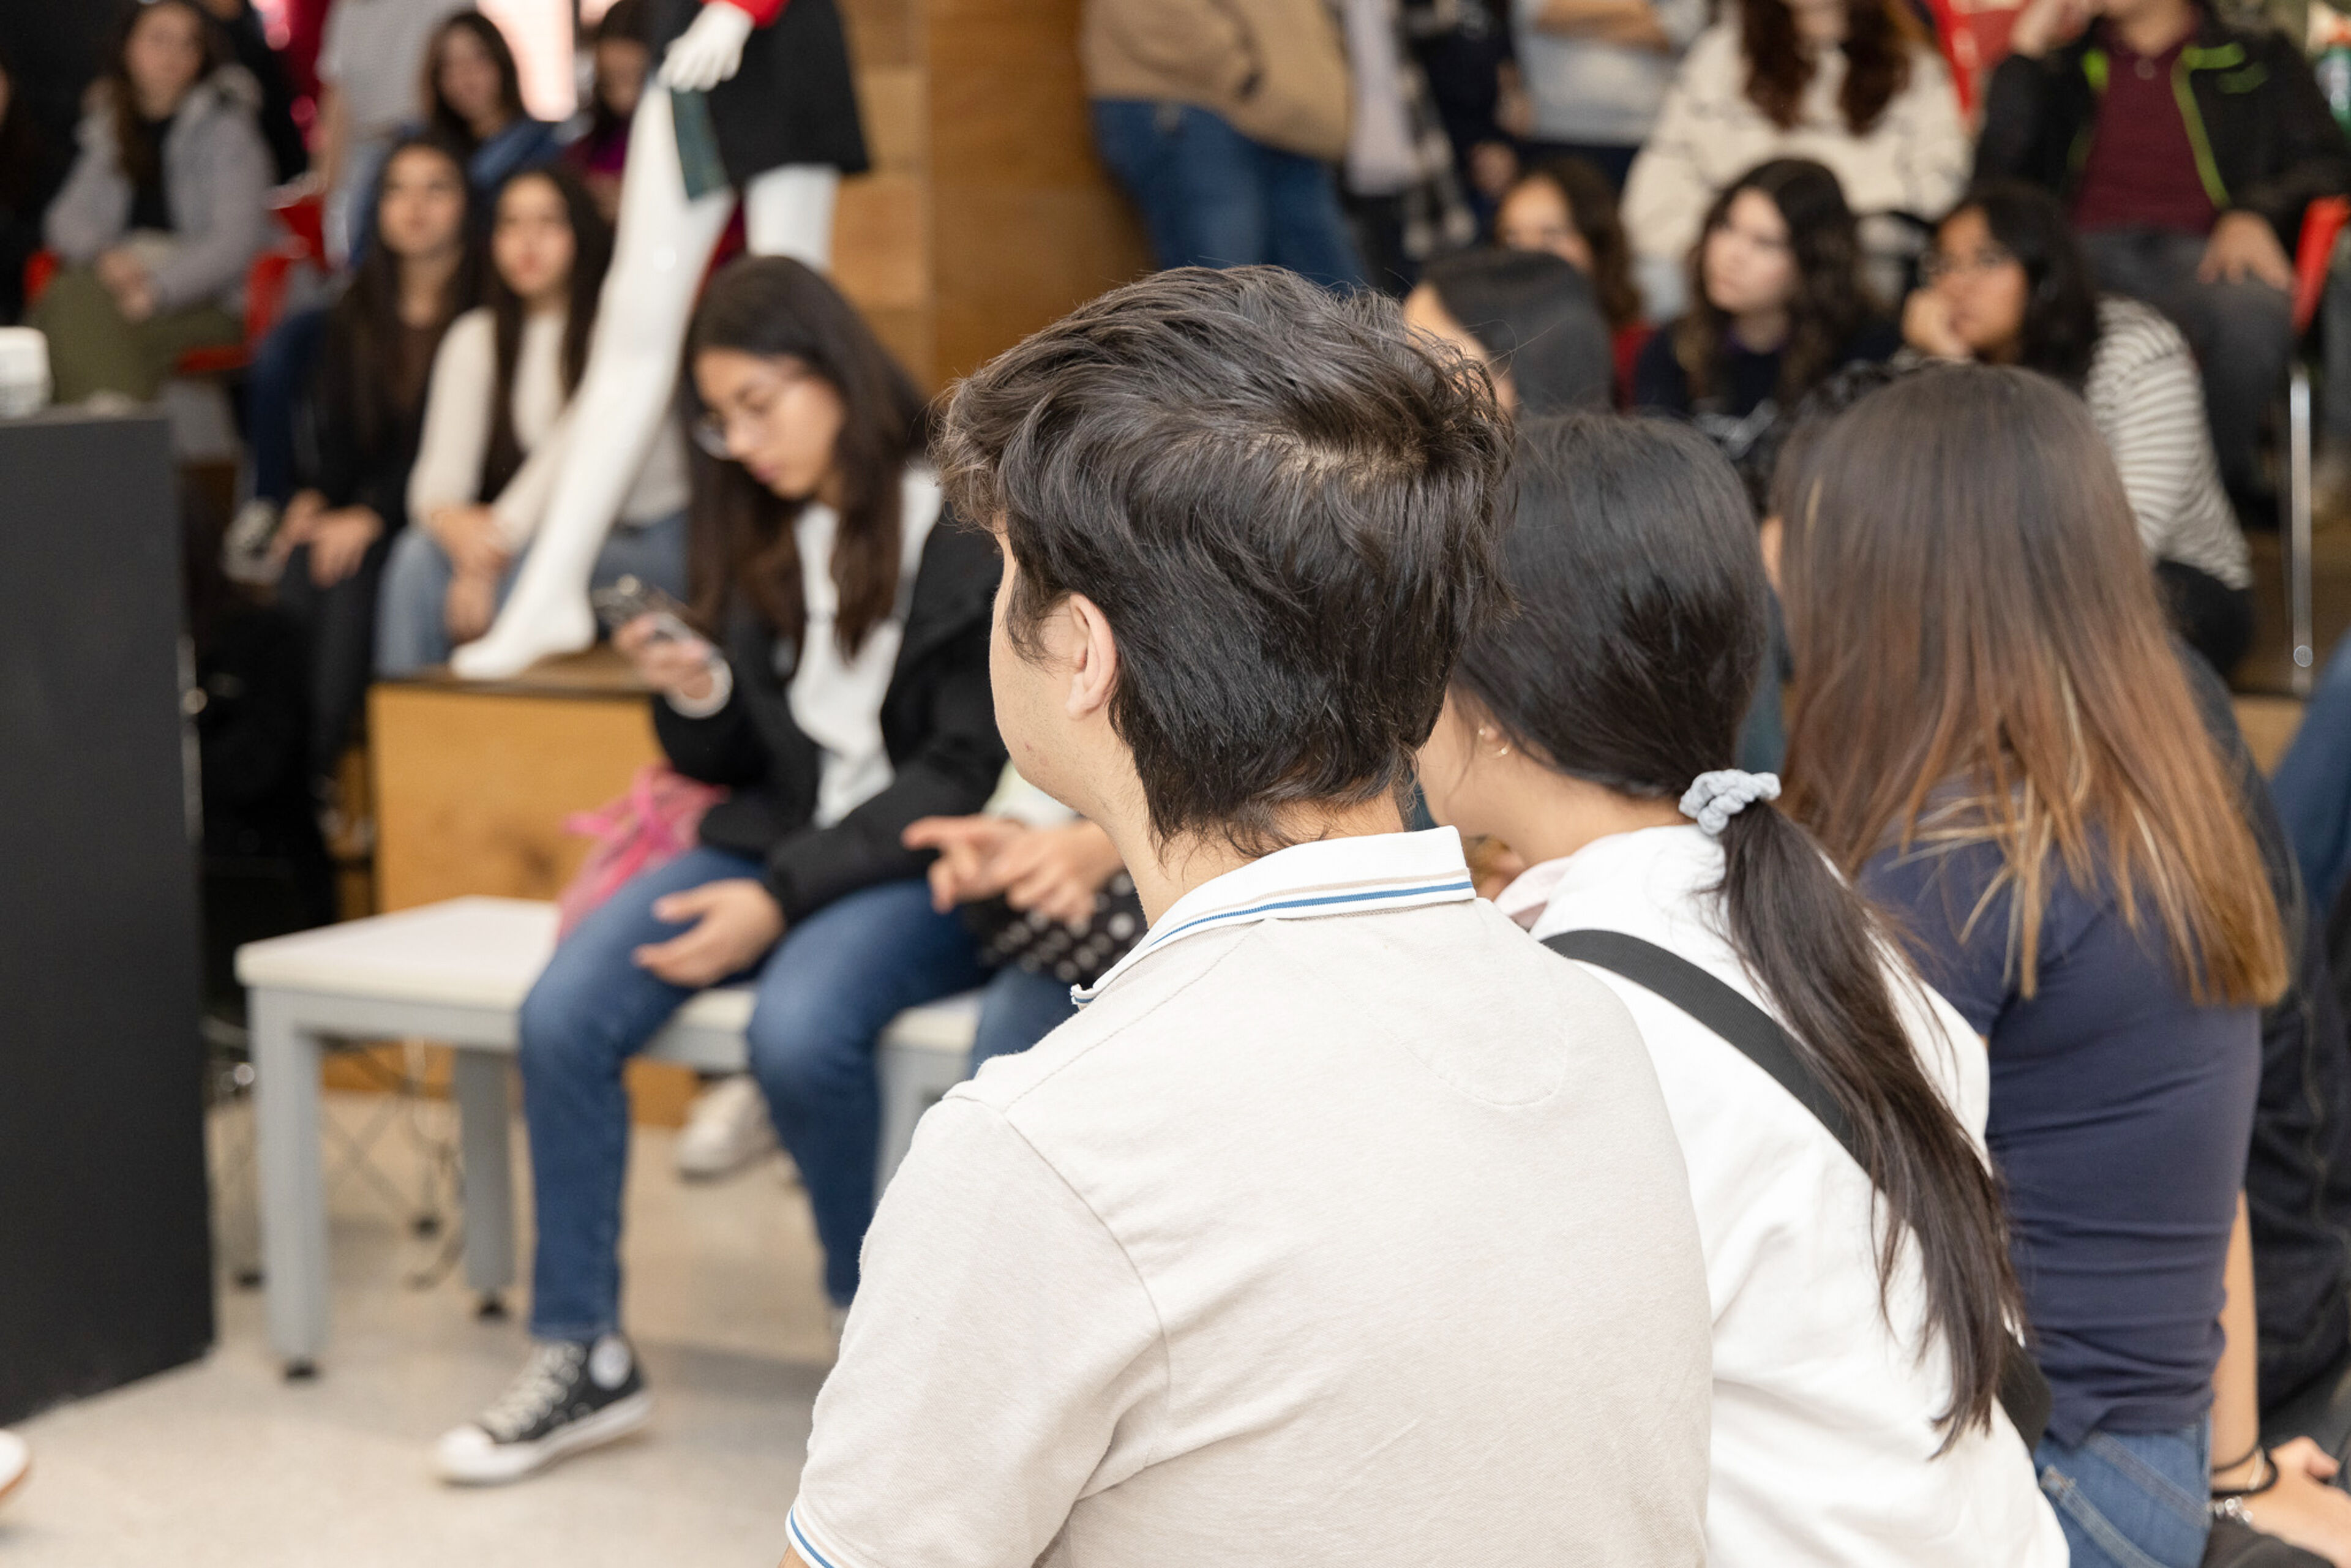 Adultos jóvenes escuchan atentamente en un evento público interior lleno de gente.